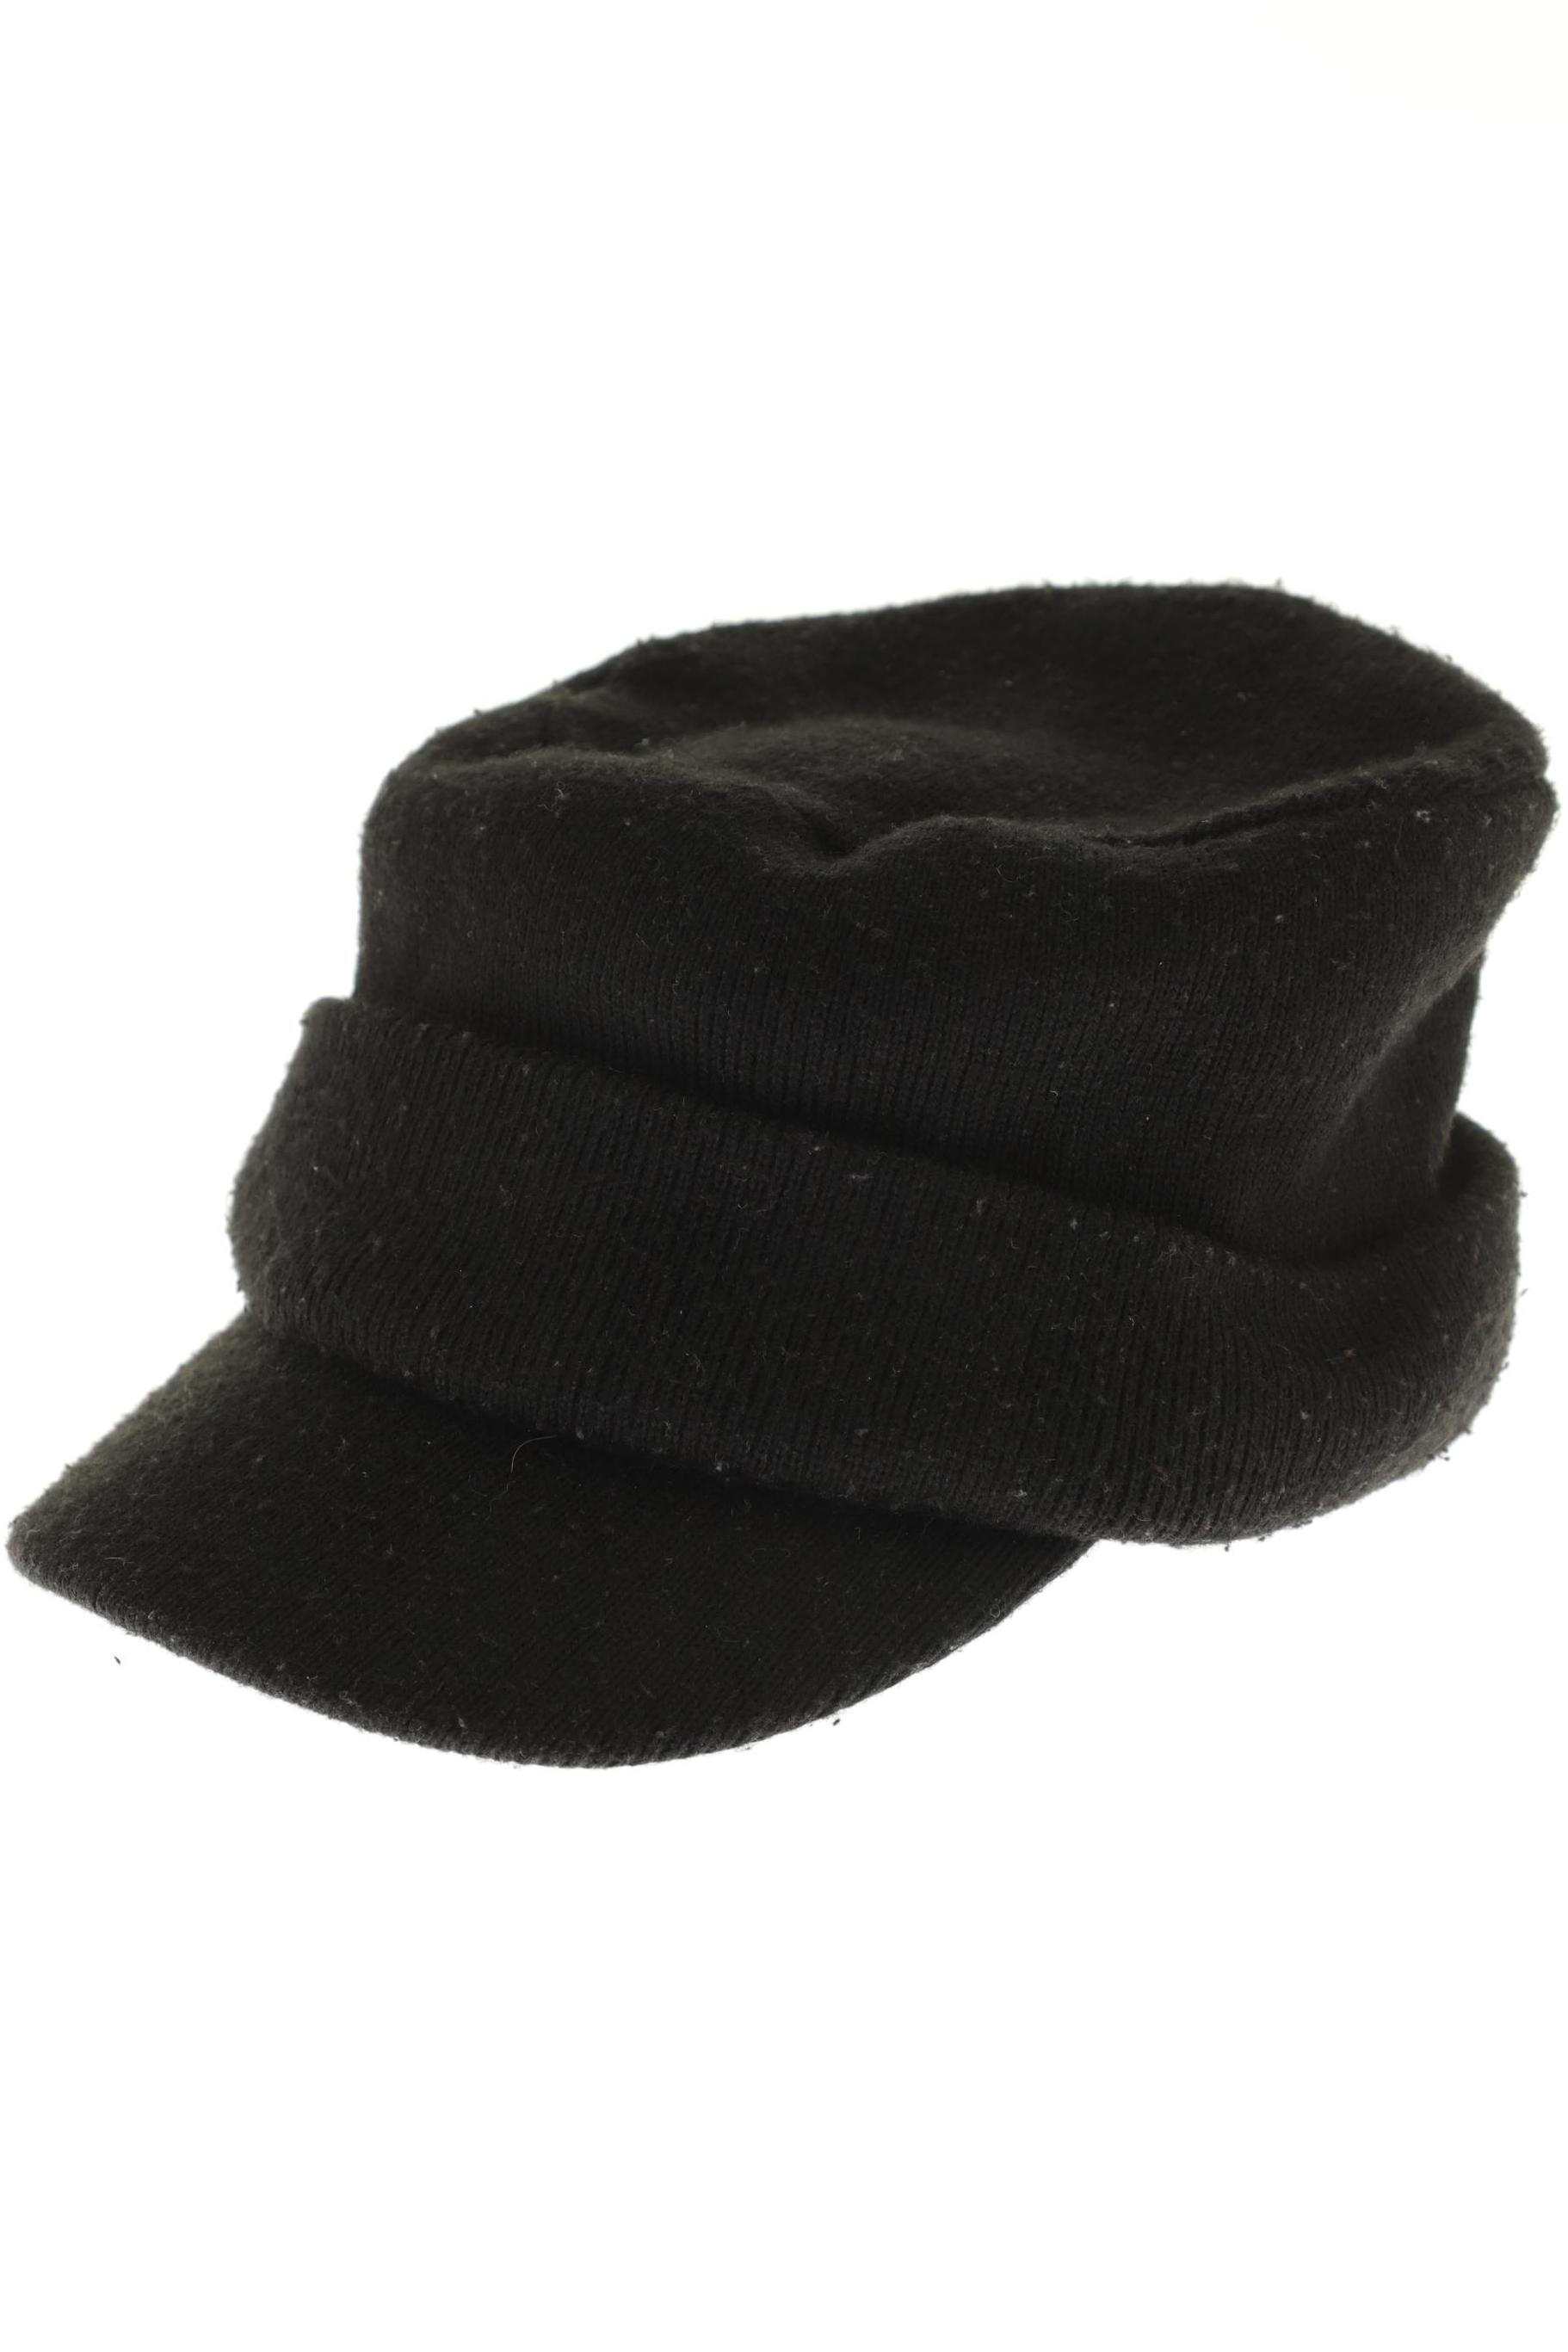 Aldo Herren Hut/Mütze, schwarz, Gr. 54 von ALDO